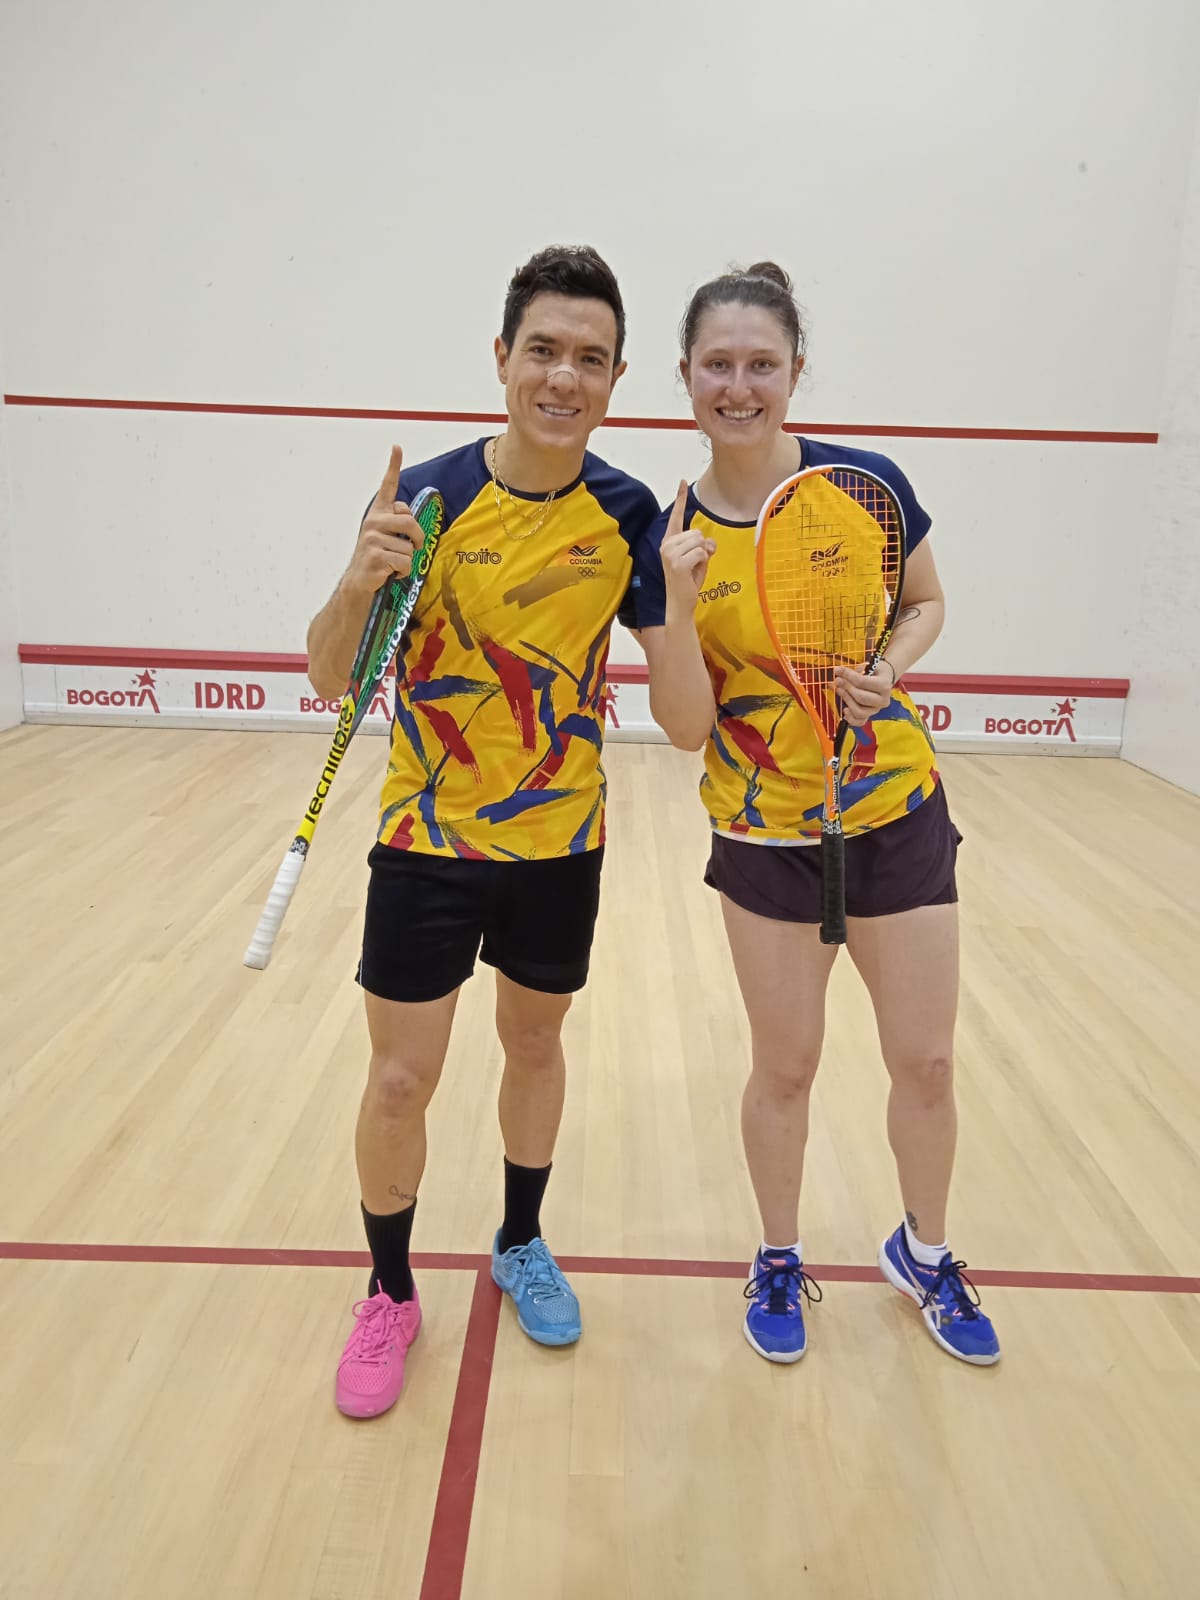 Miguel Rodríguez y Laura Tovar ganaron en la Válida Nacional de Squash. Foto IDRD.